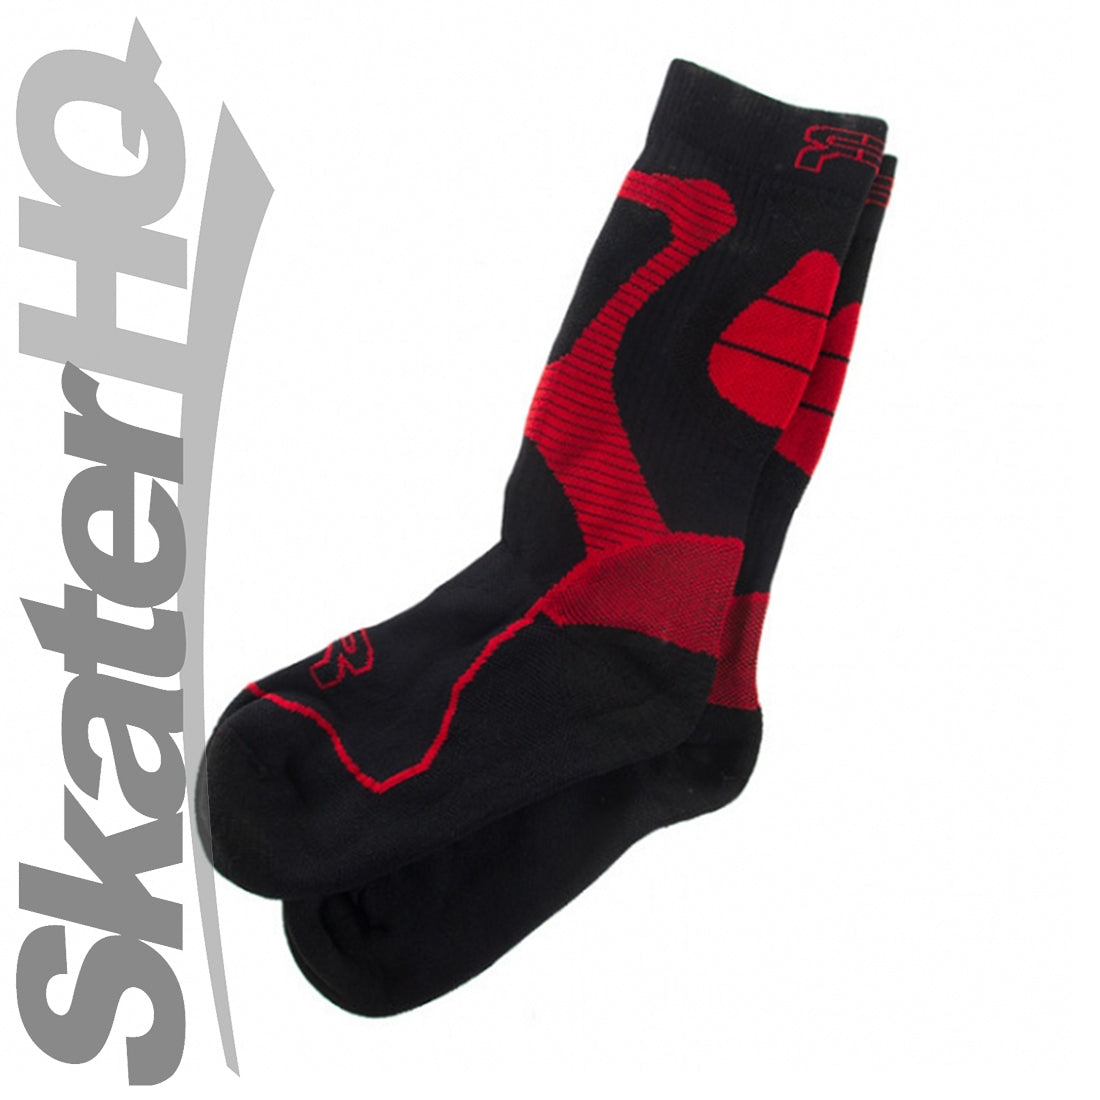 FR Nano Sport Socks Red/Black - Large - EU42-44 Apparel Socks